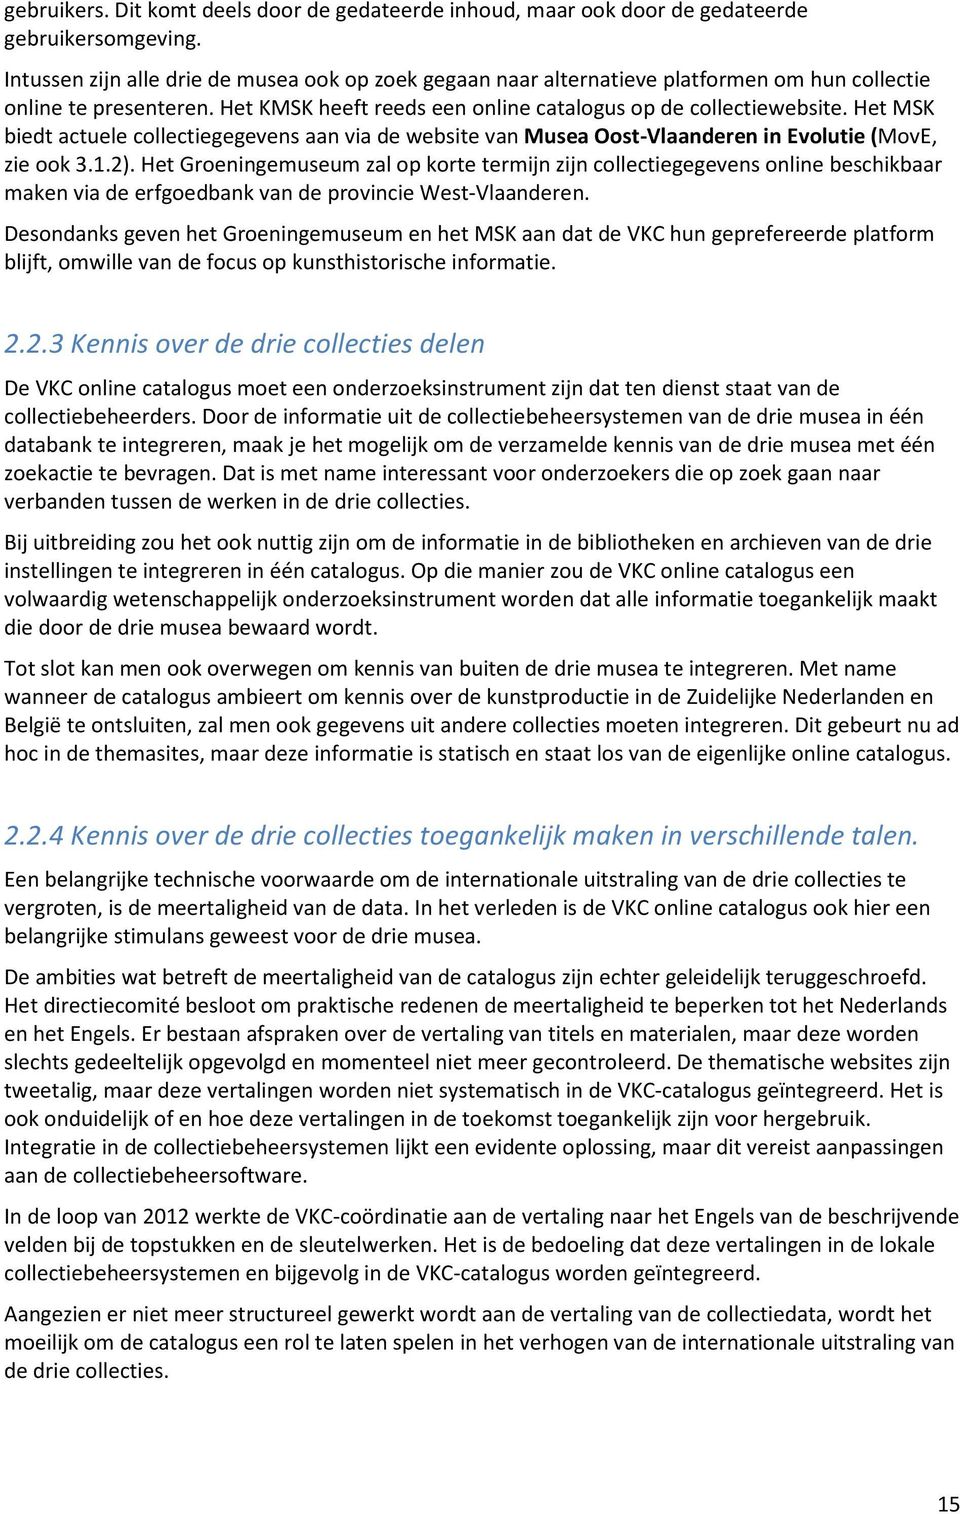 Het MSK biedt actuele collectiegegevens aan via de website van Musea Oost-Vlaanderen in Evolutie (MovE, zie ook 3.1.2).